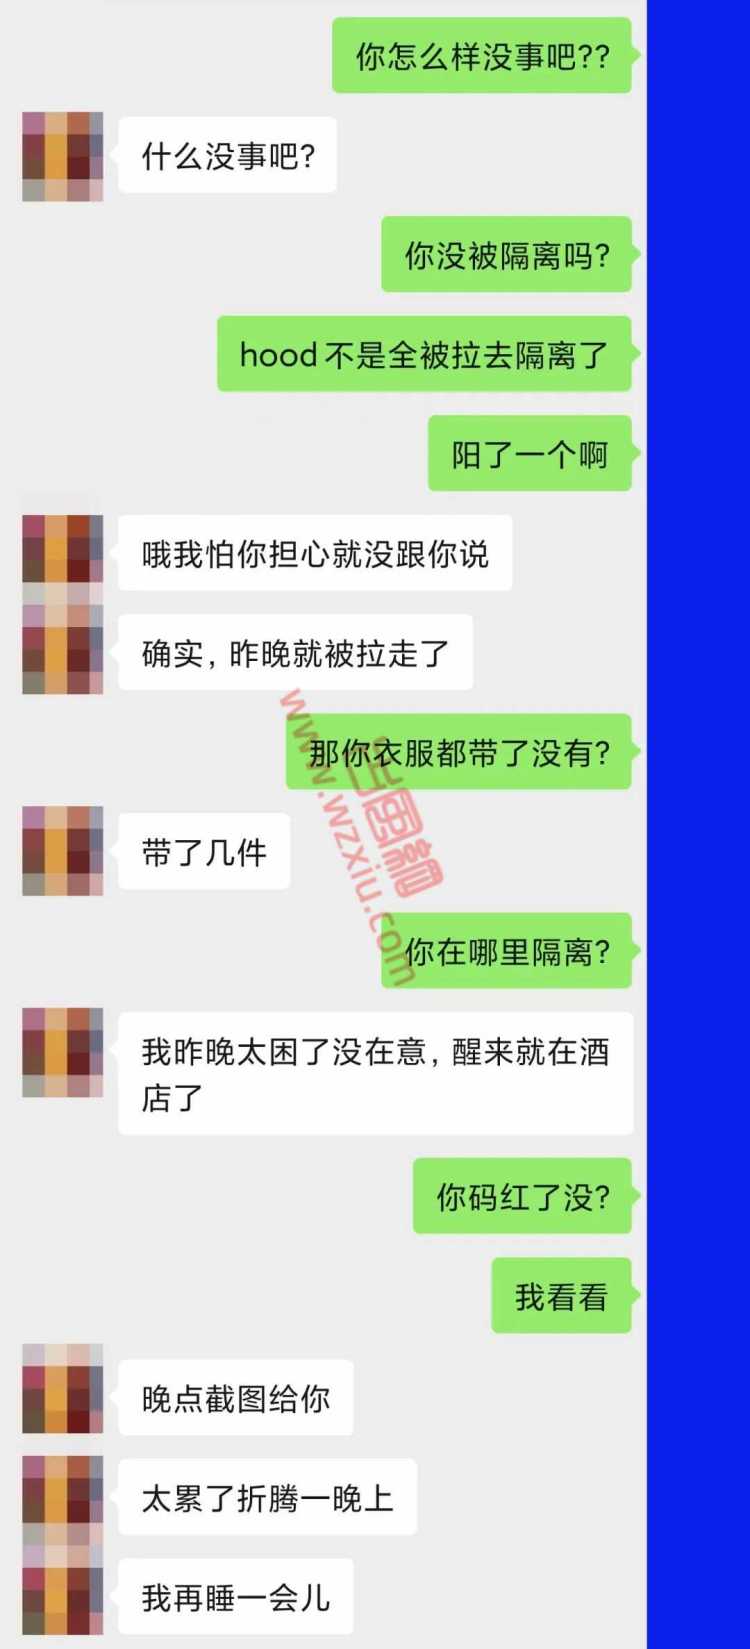 吃瓜！沪上海王在酒店躲了七天！人在杭州却骗女友在hood蹦迪？